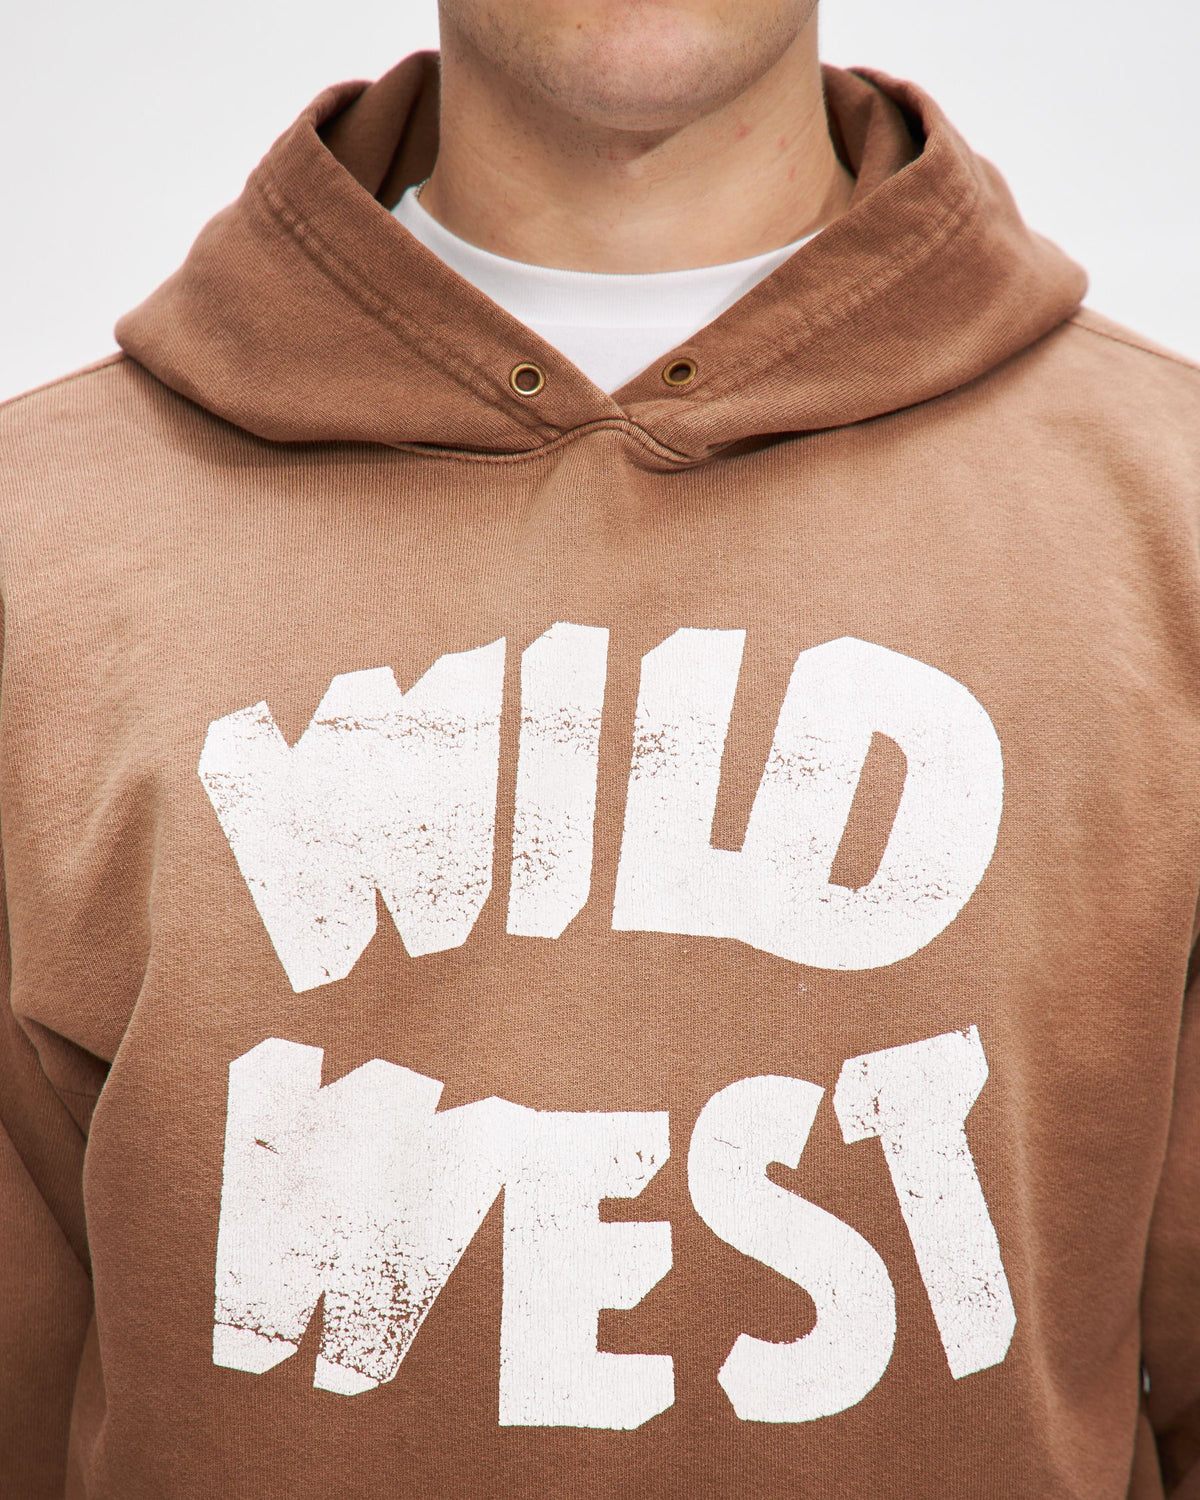 Wild West Hooded Sweatshirt in Mustang Brown